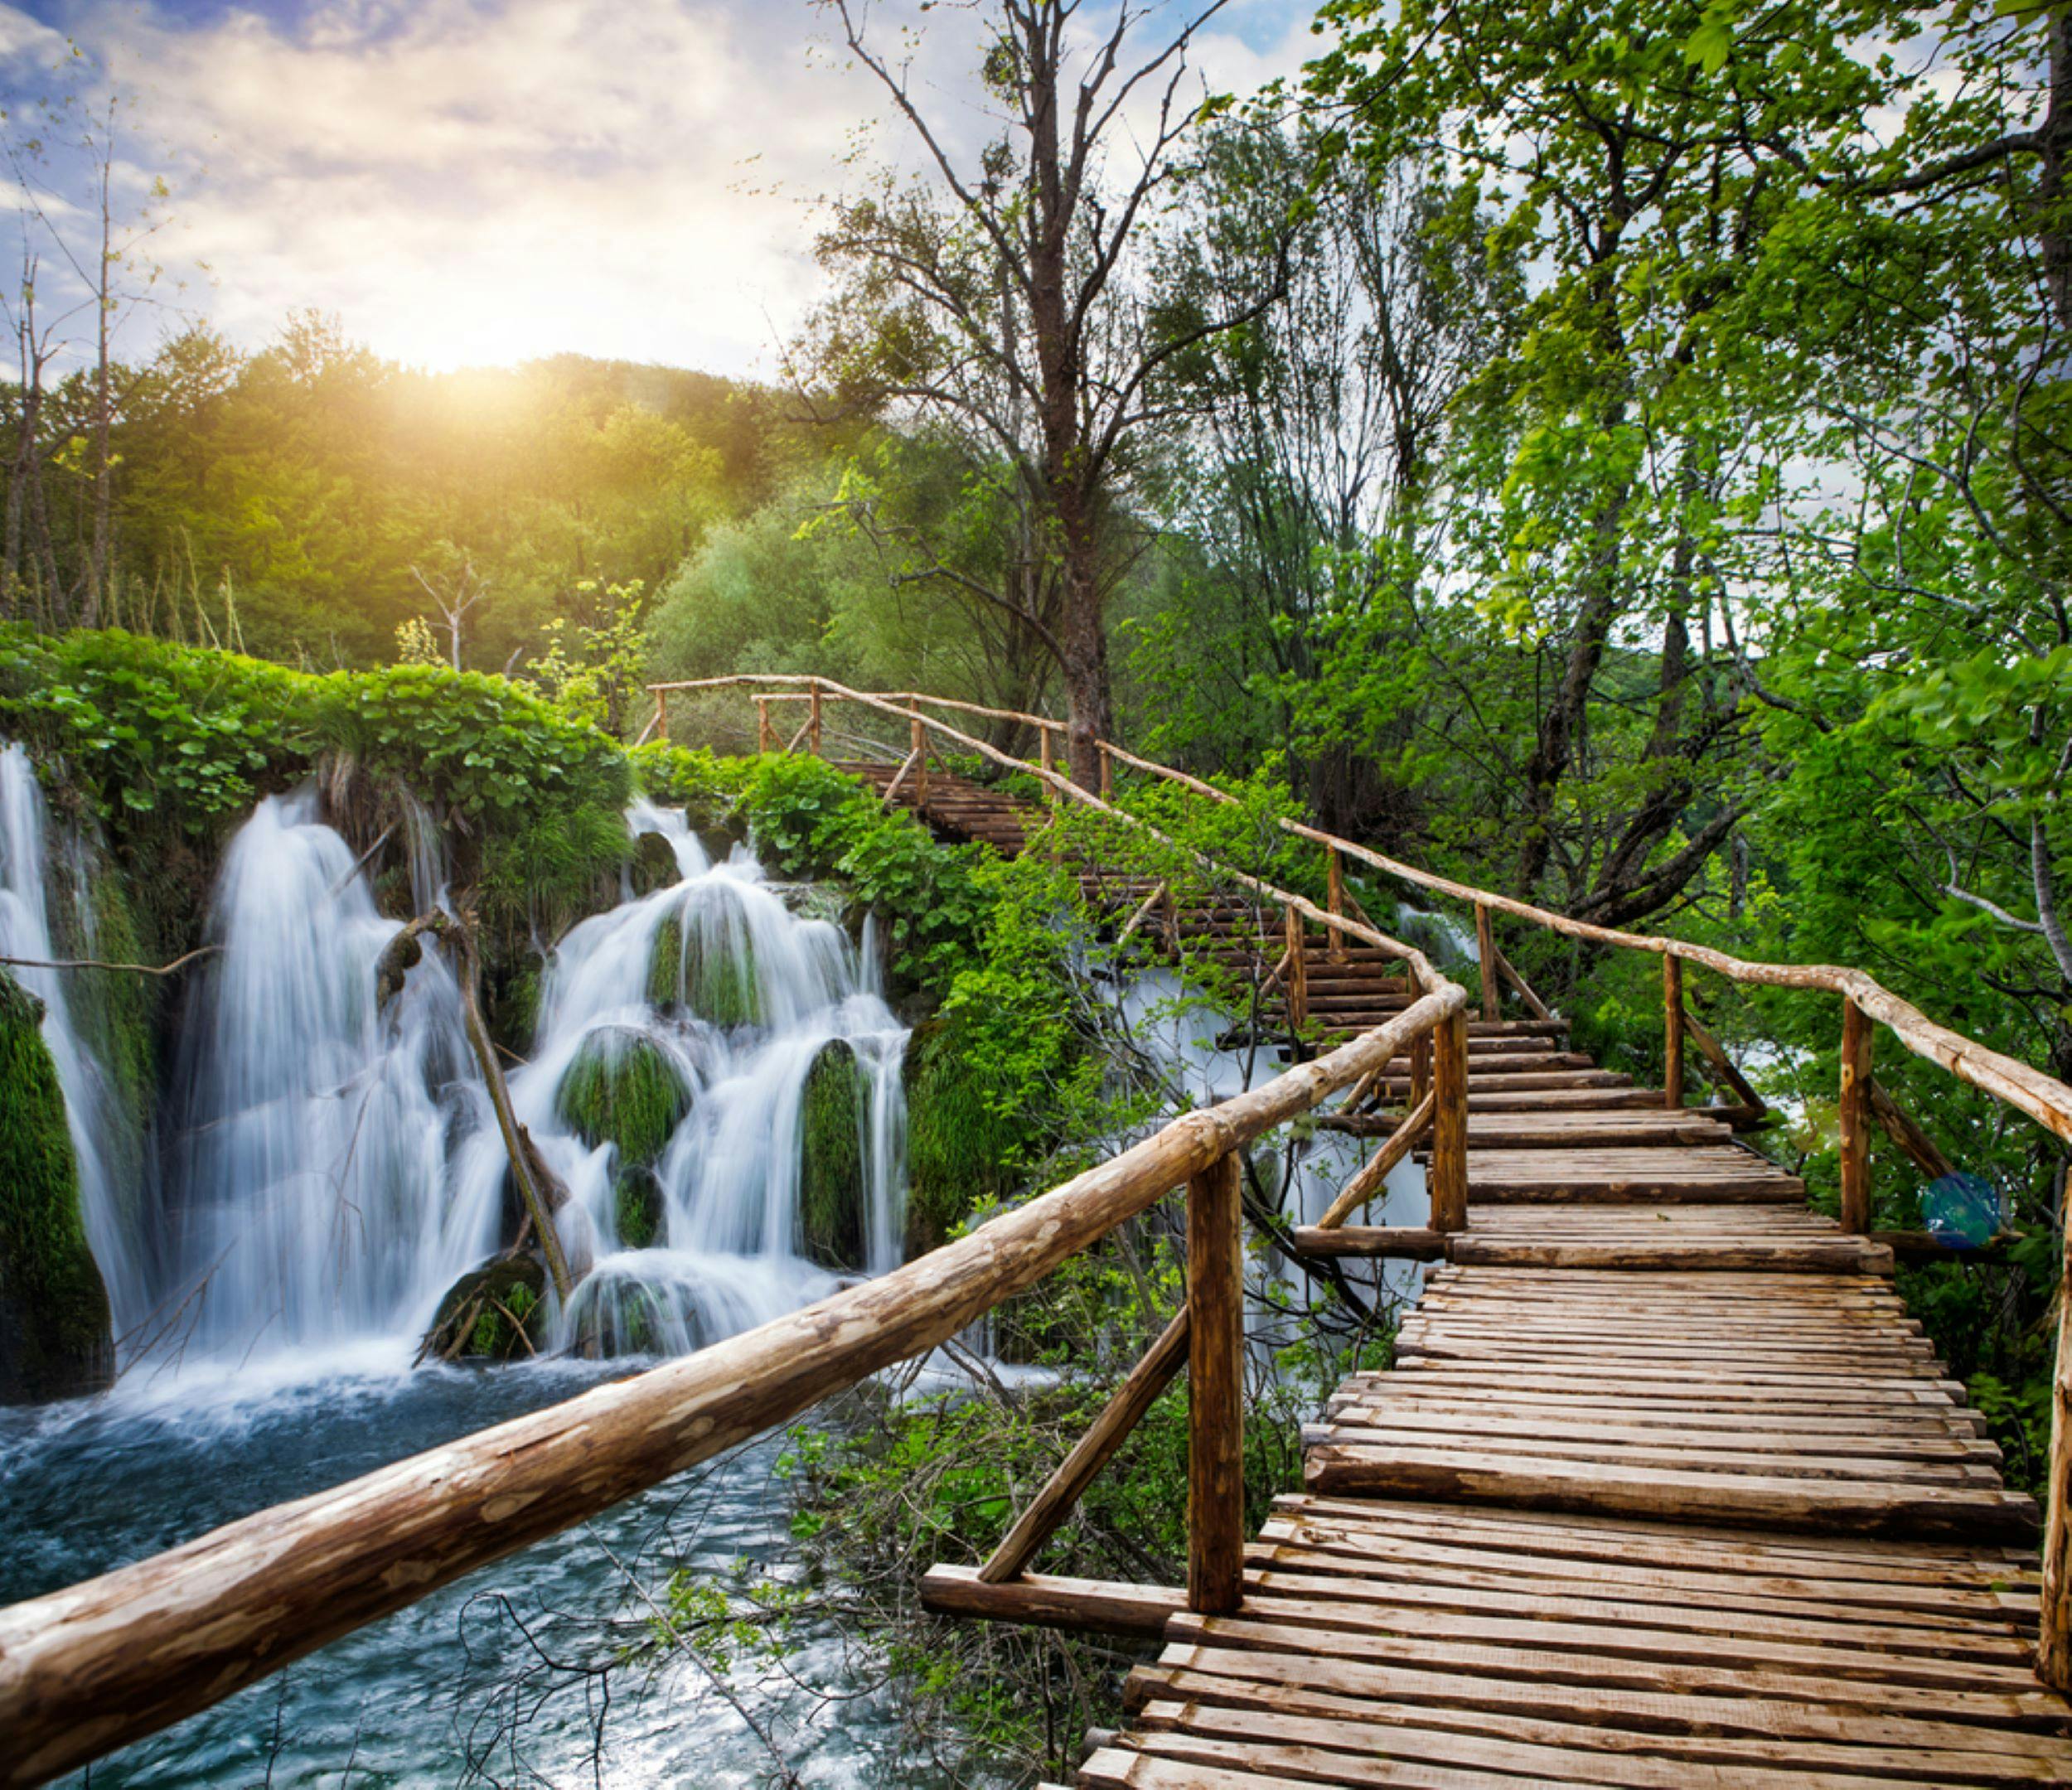 Gita giornaliera privata al Parco nazionale dei laghi di Plitvice da Lubiana